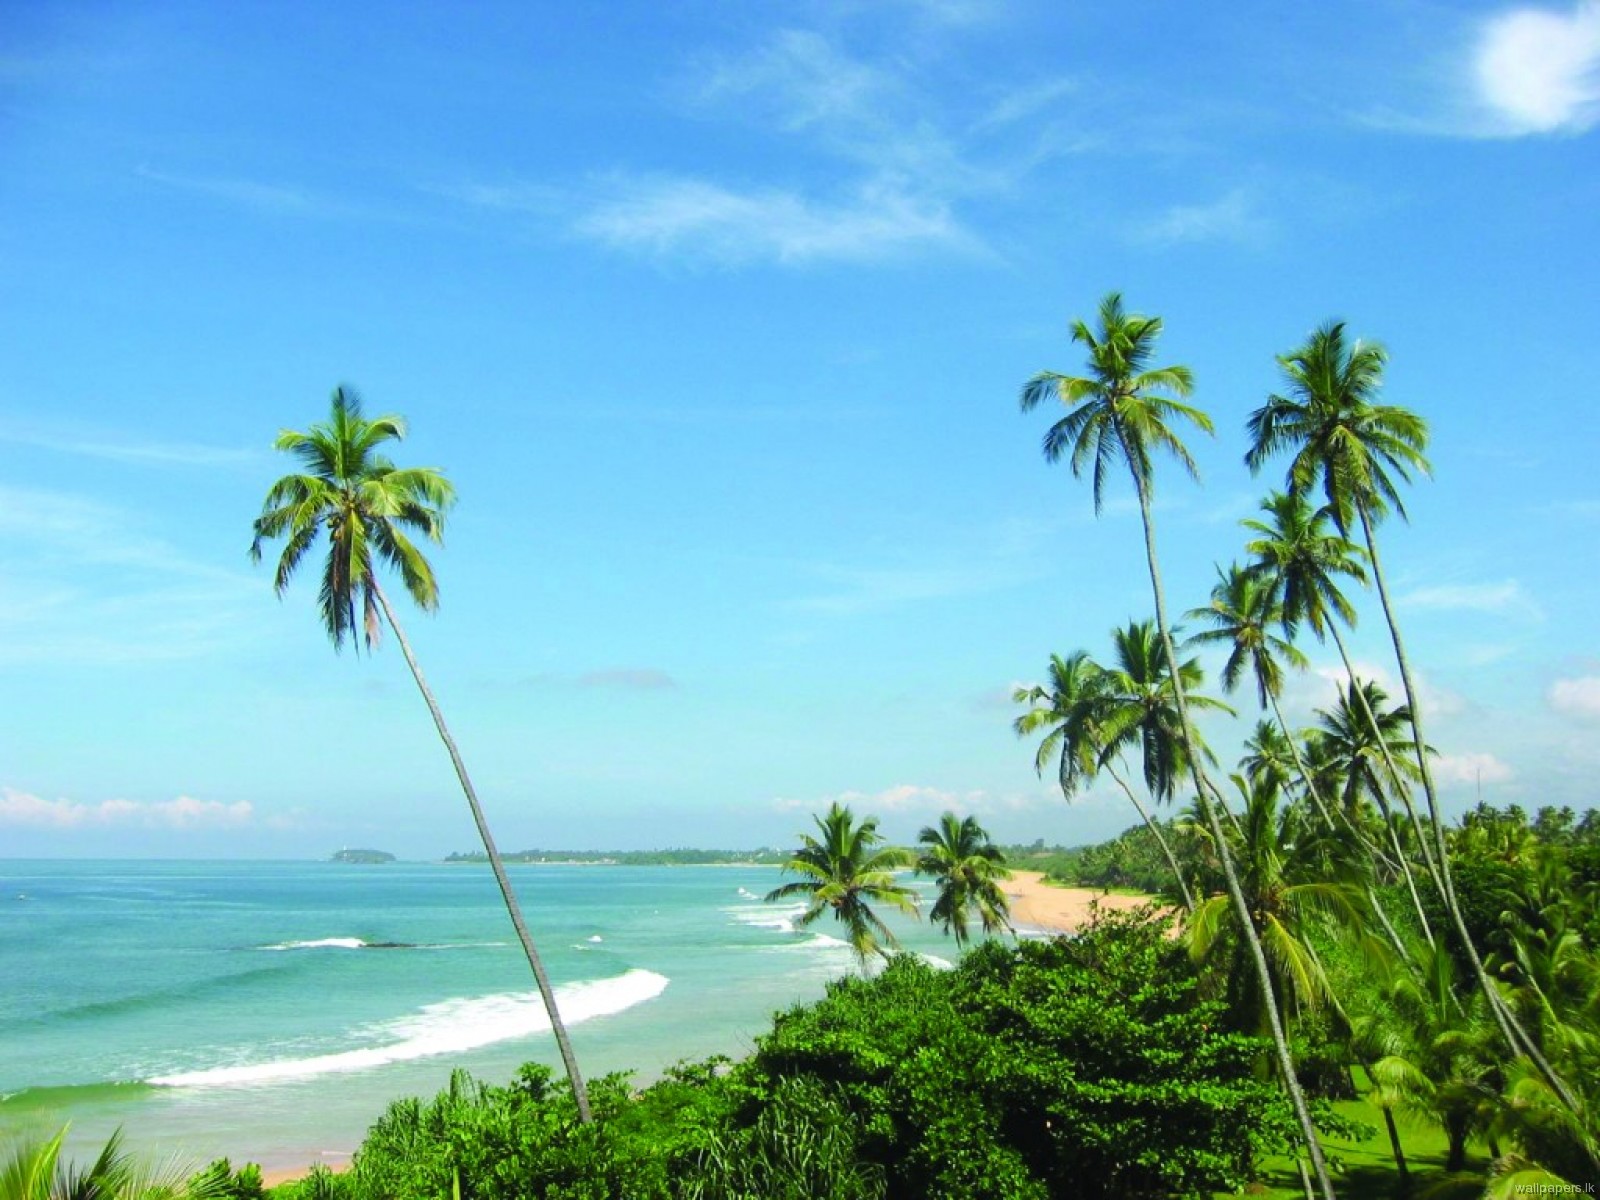 srilanka tourism in june